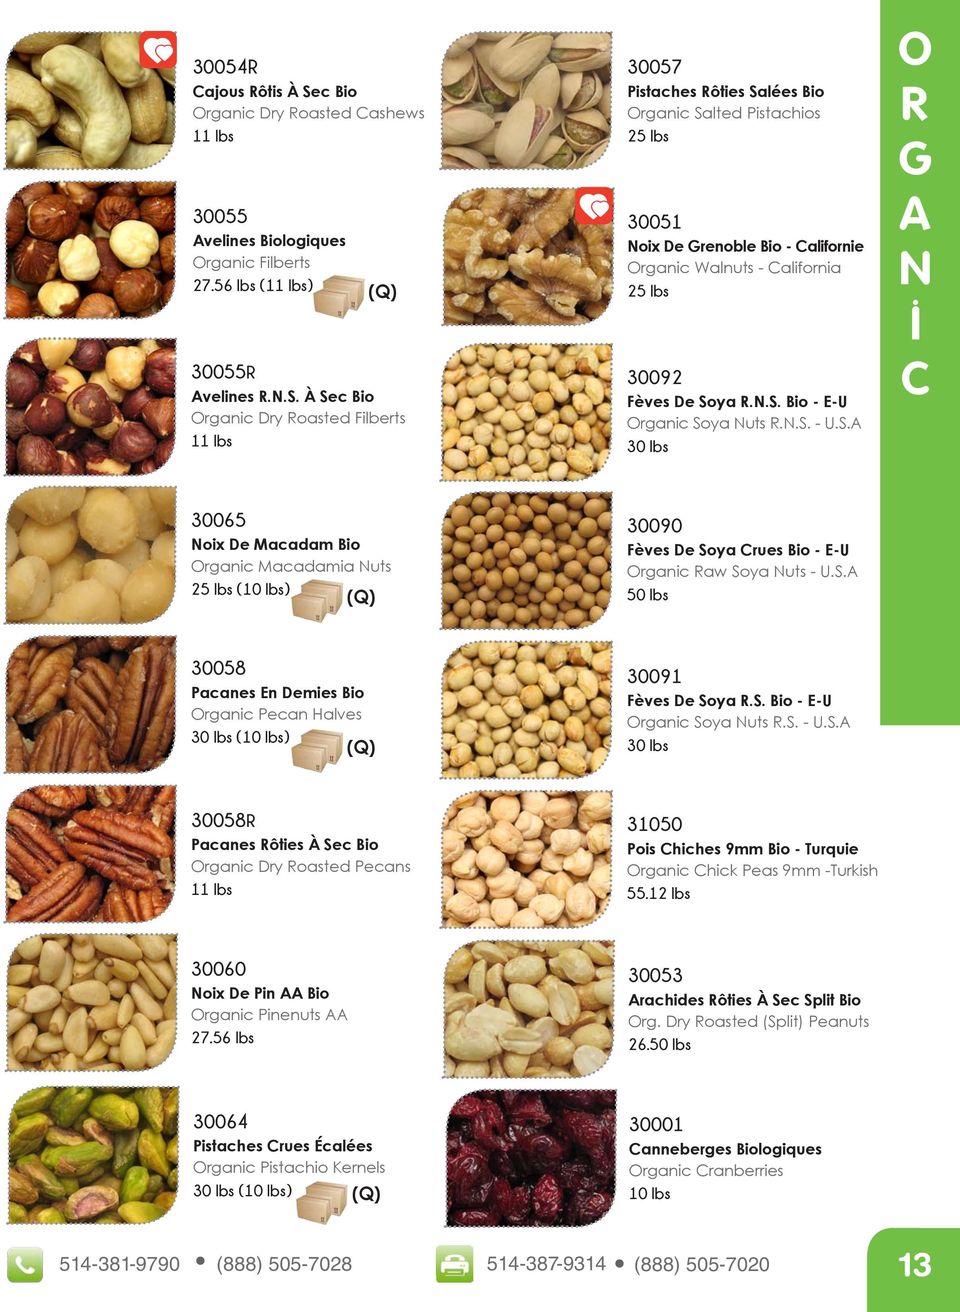 N.. - U..A R G A N C 30065 Noix De Macadam Bio rganic Macadamia Nuts () (Q) 30090 Fèves De oya Crues Bio - E-U rganic Raw oya Nuts - U.